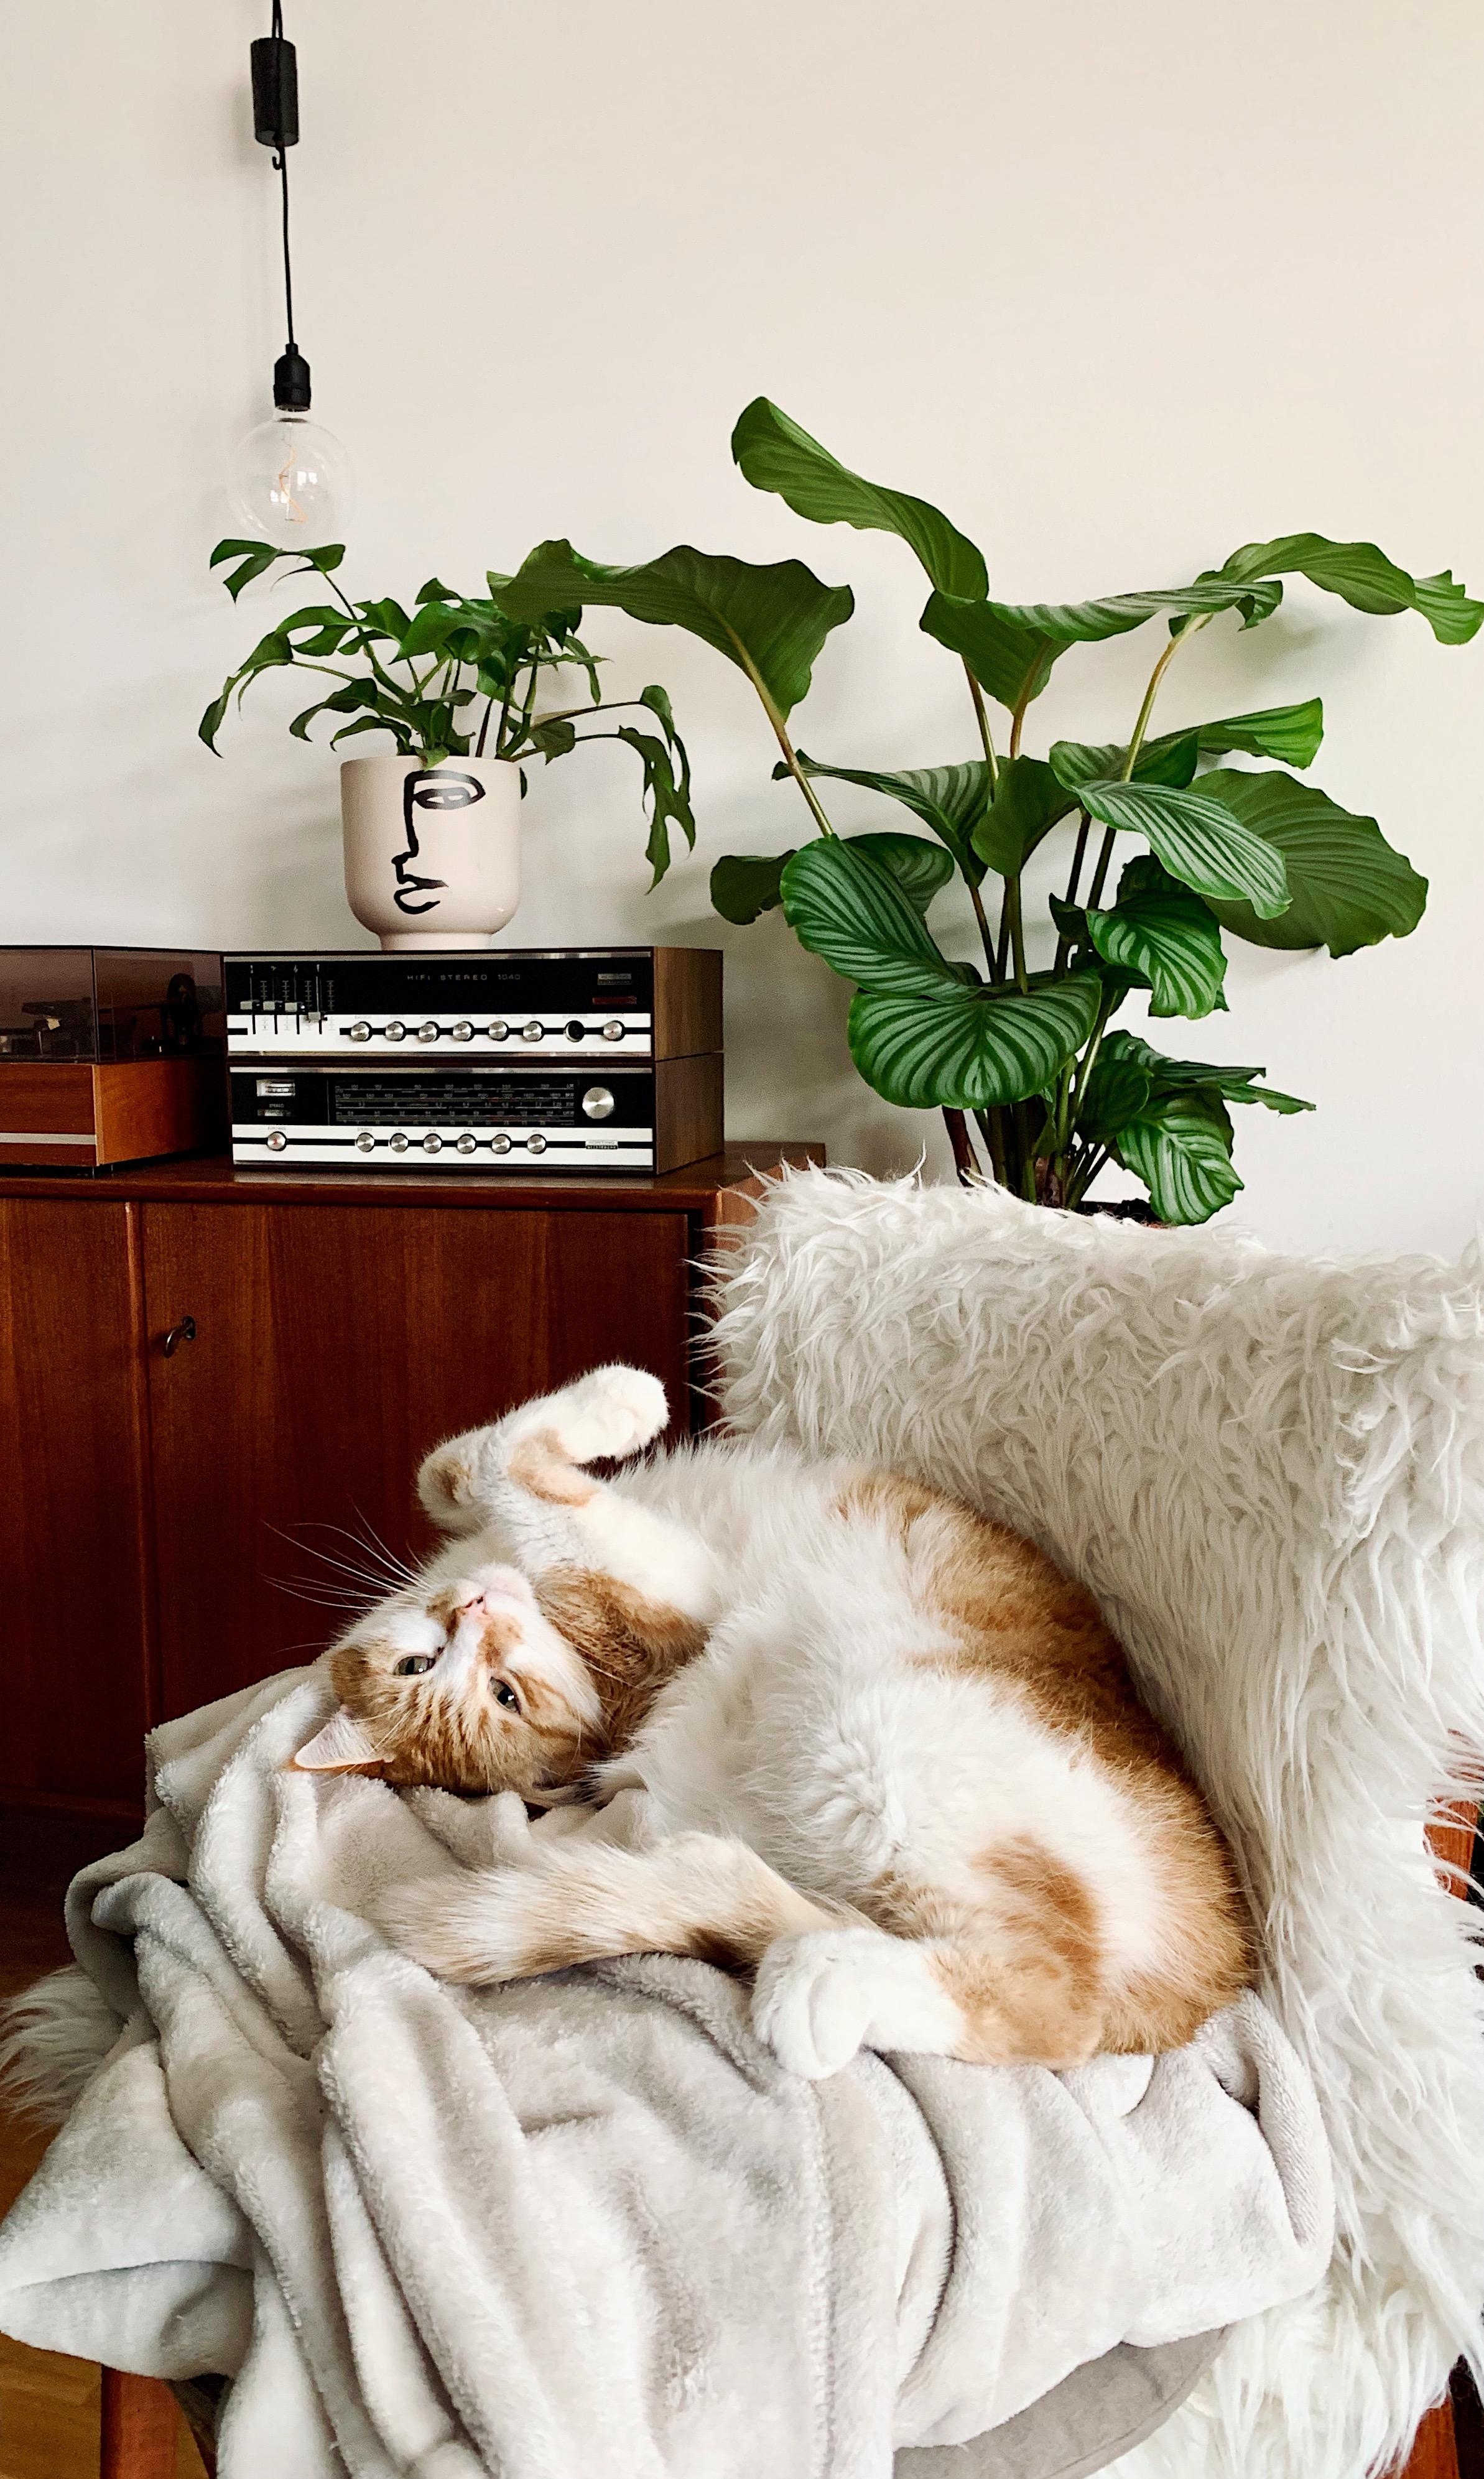 Die gemütliche Zeit zwischen den Jahren 😍
#staycozy#cozy#cats#sideboard